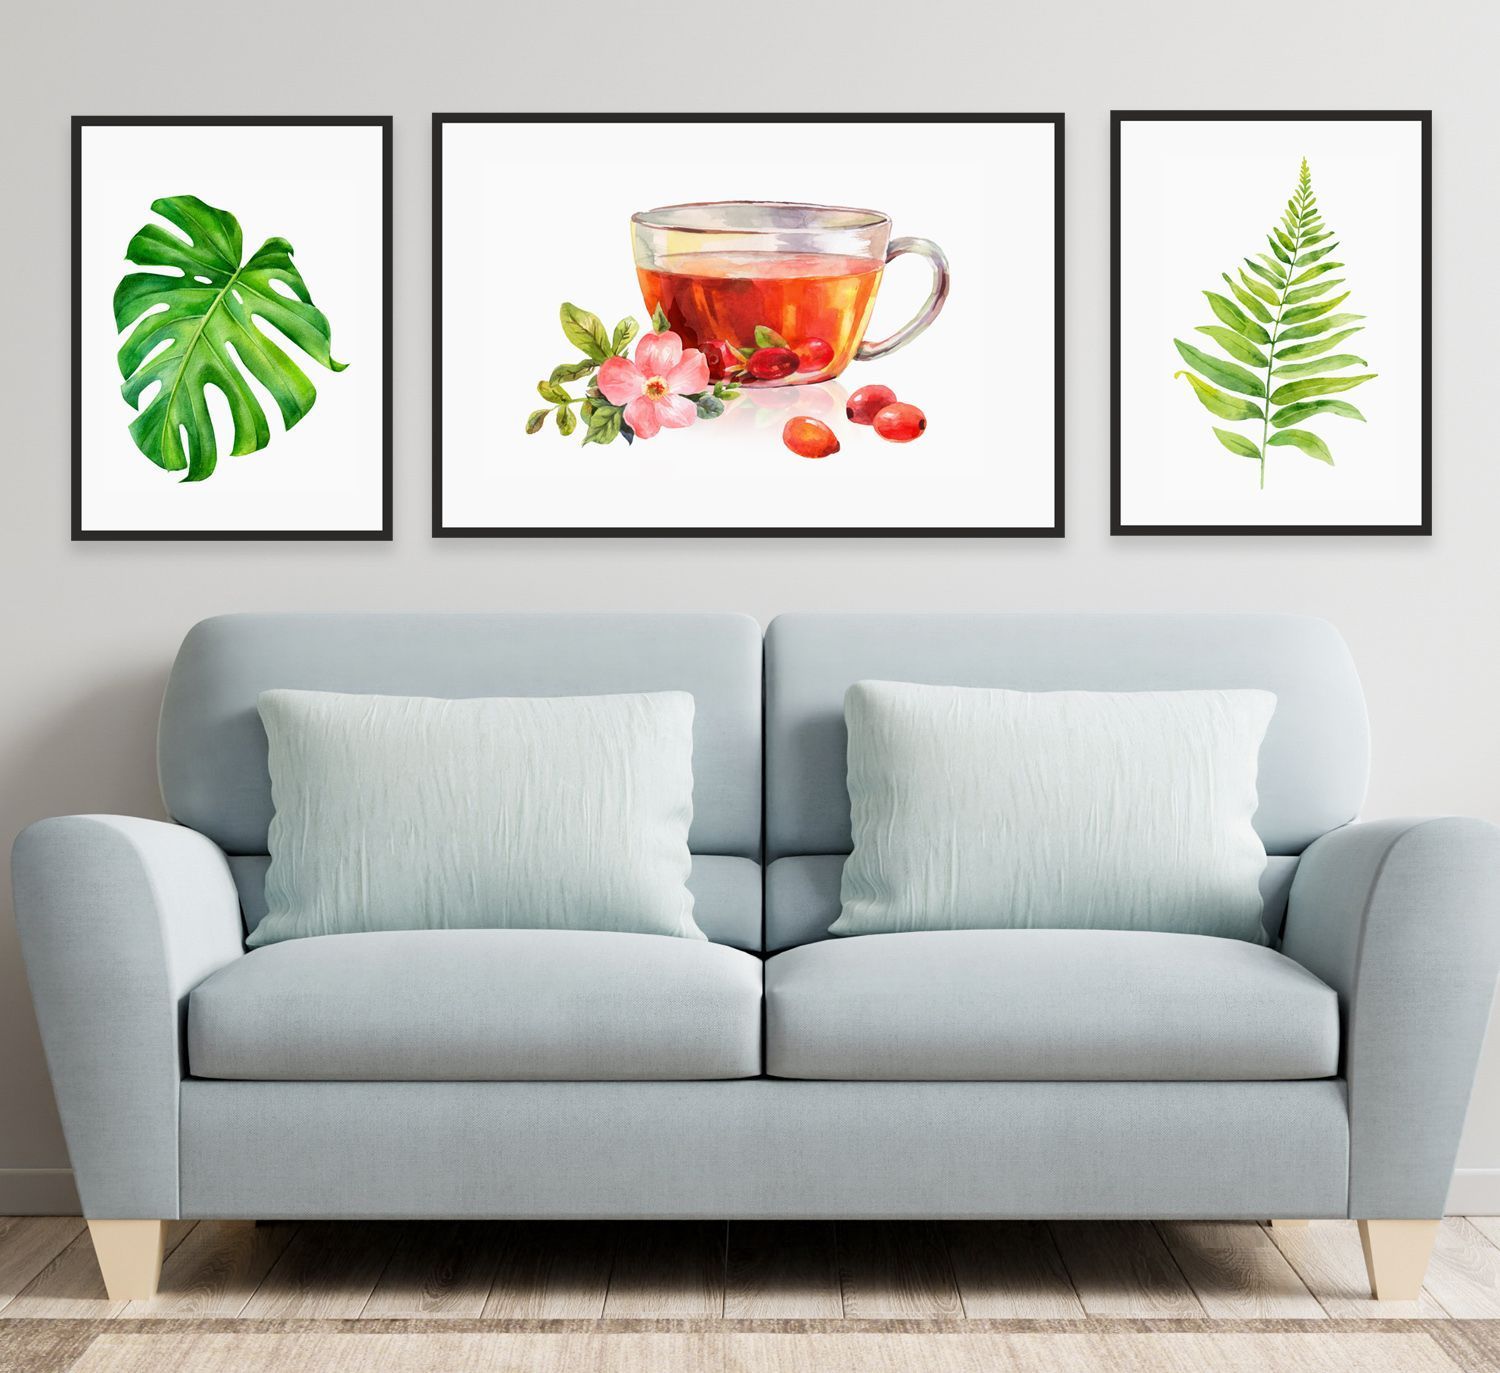 Набор постеров "Шиповниковый чай и зелень"